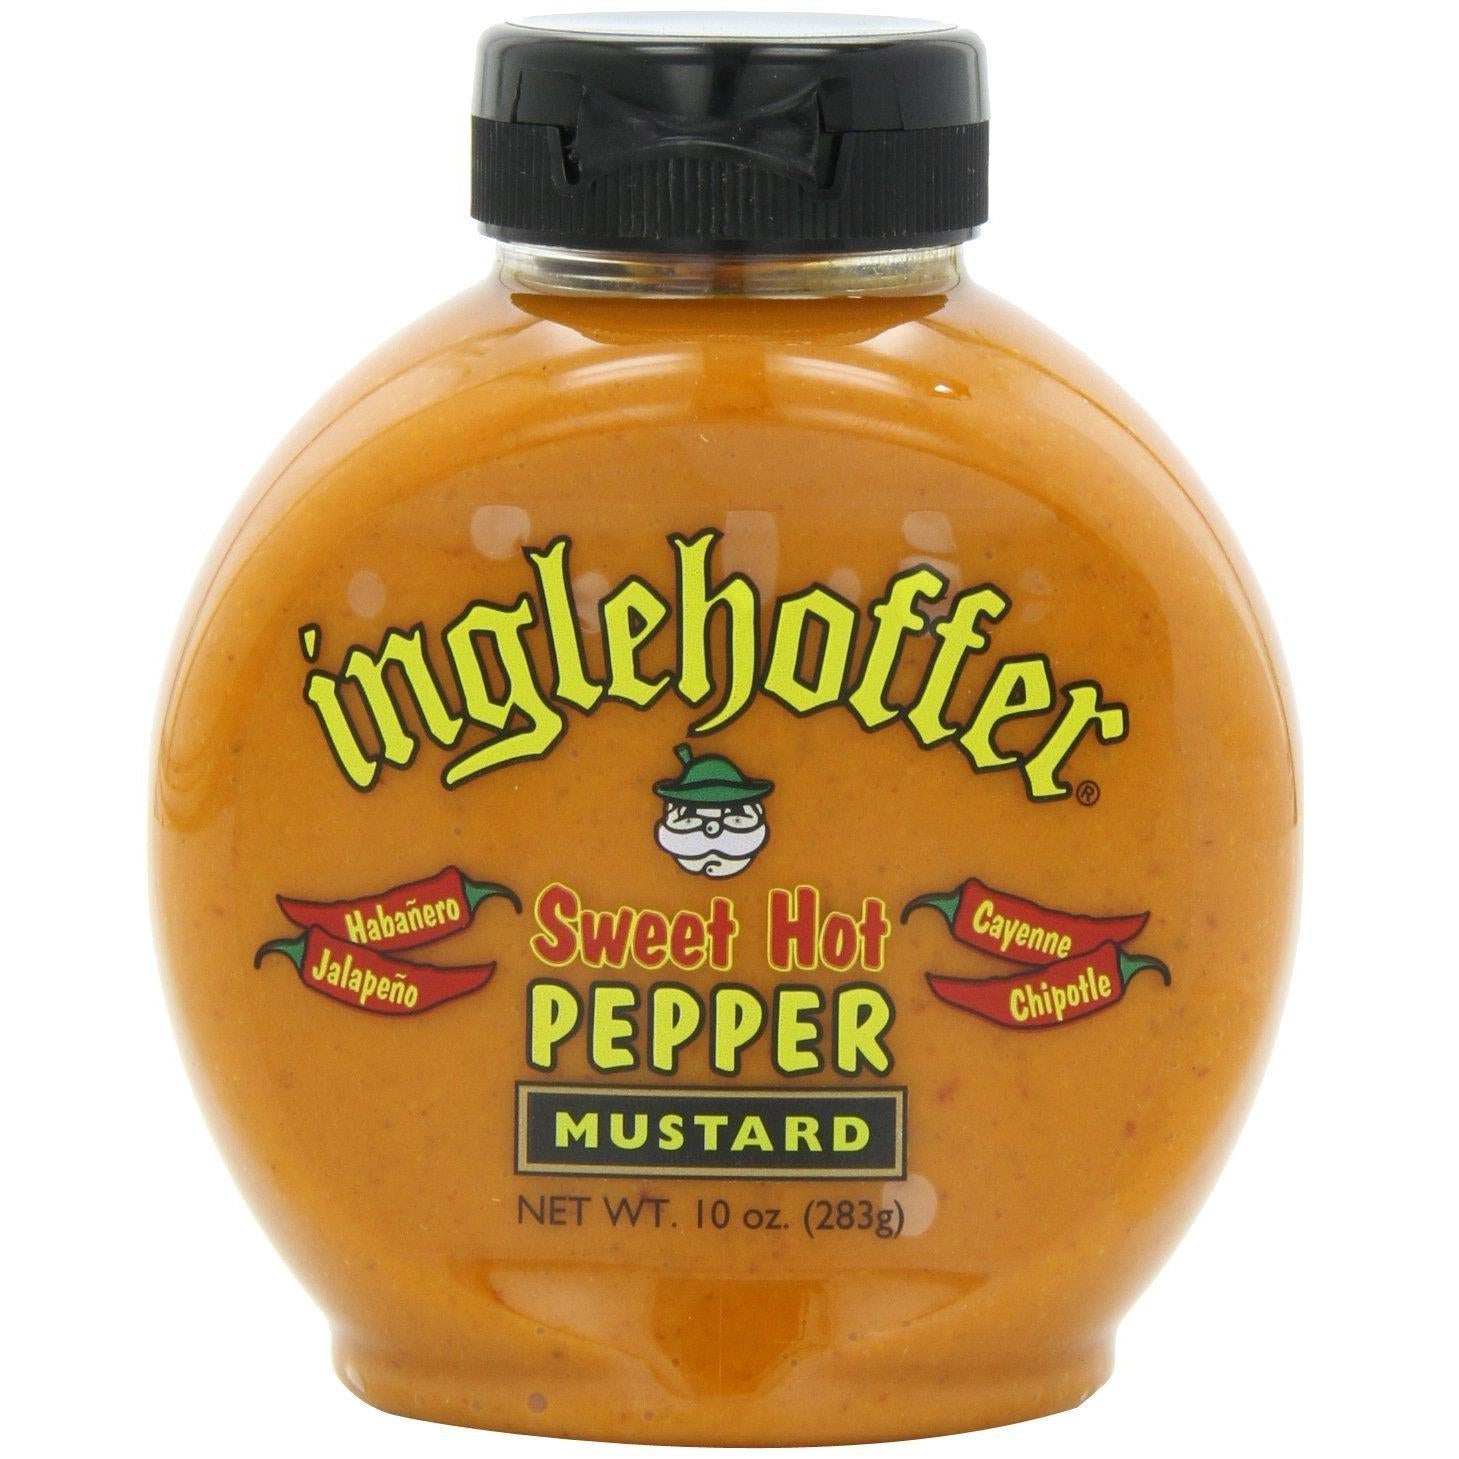 Inglehoffer, Sweet Hot Pepper Mustard, 10oz Bottle (Pack of 2)